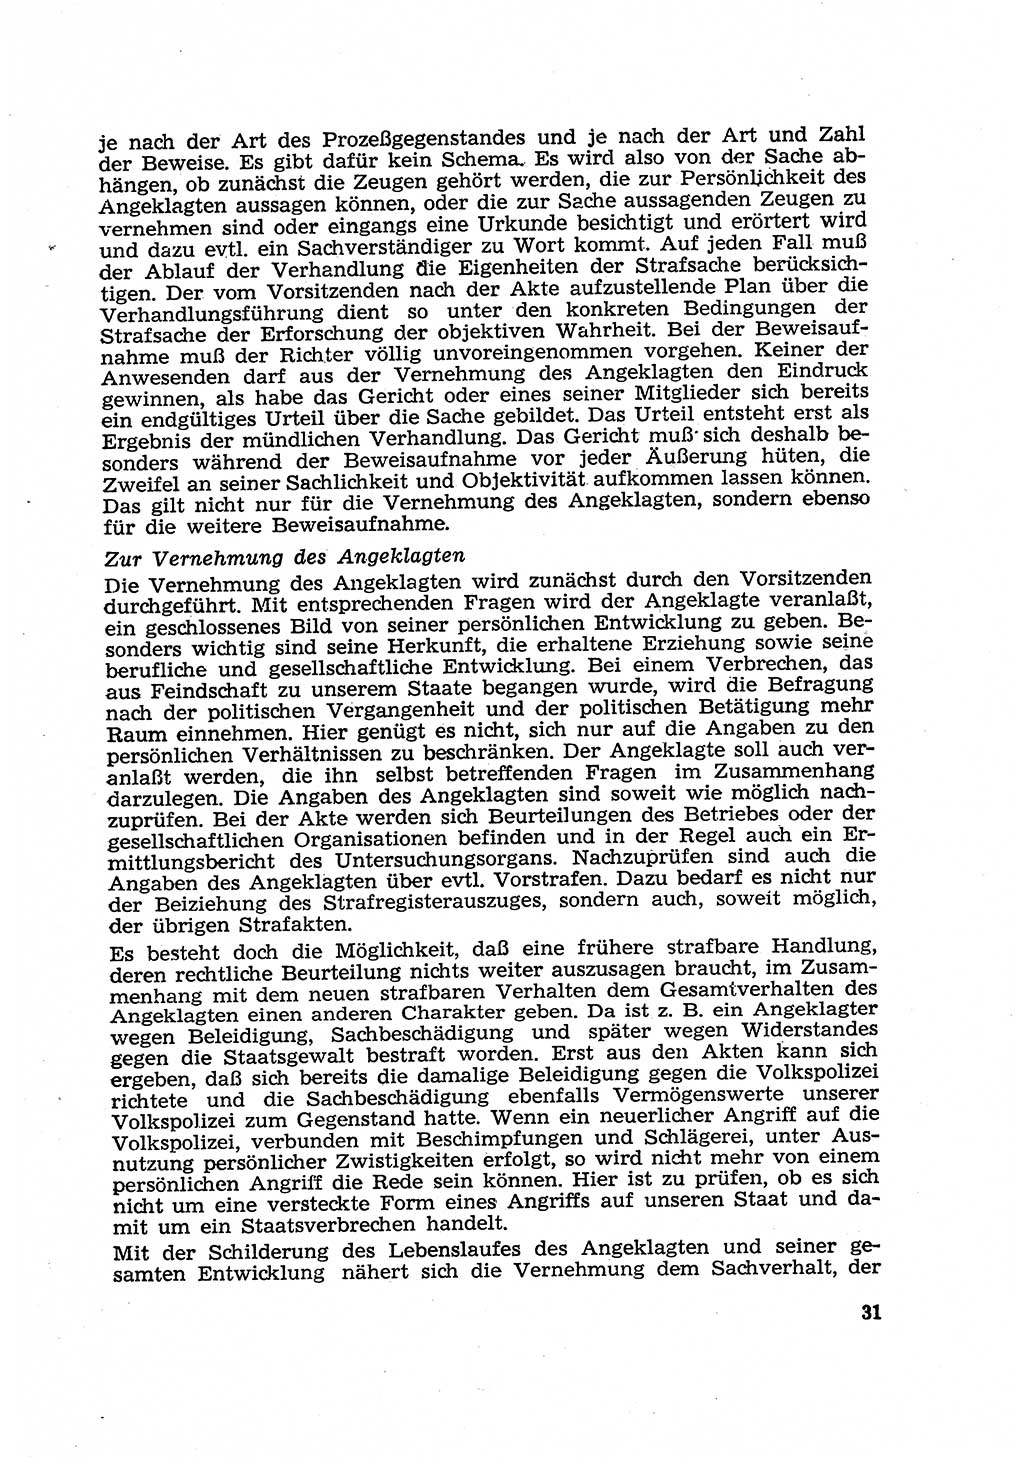 Strafverfahren in der Deutschen Demokratischen Republik (DDR) und seine demokratischen Prinzipien 1956, Seite 31 (Str.-Verf. DDR 1956, S. 31)